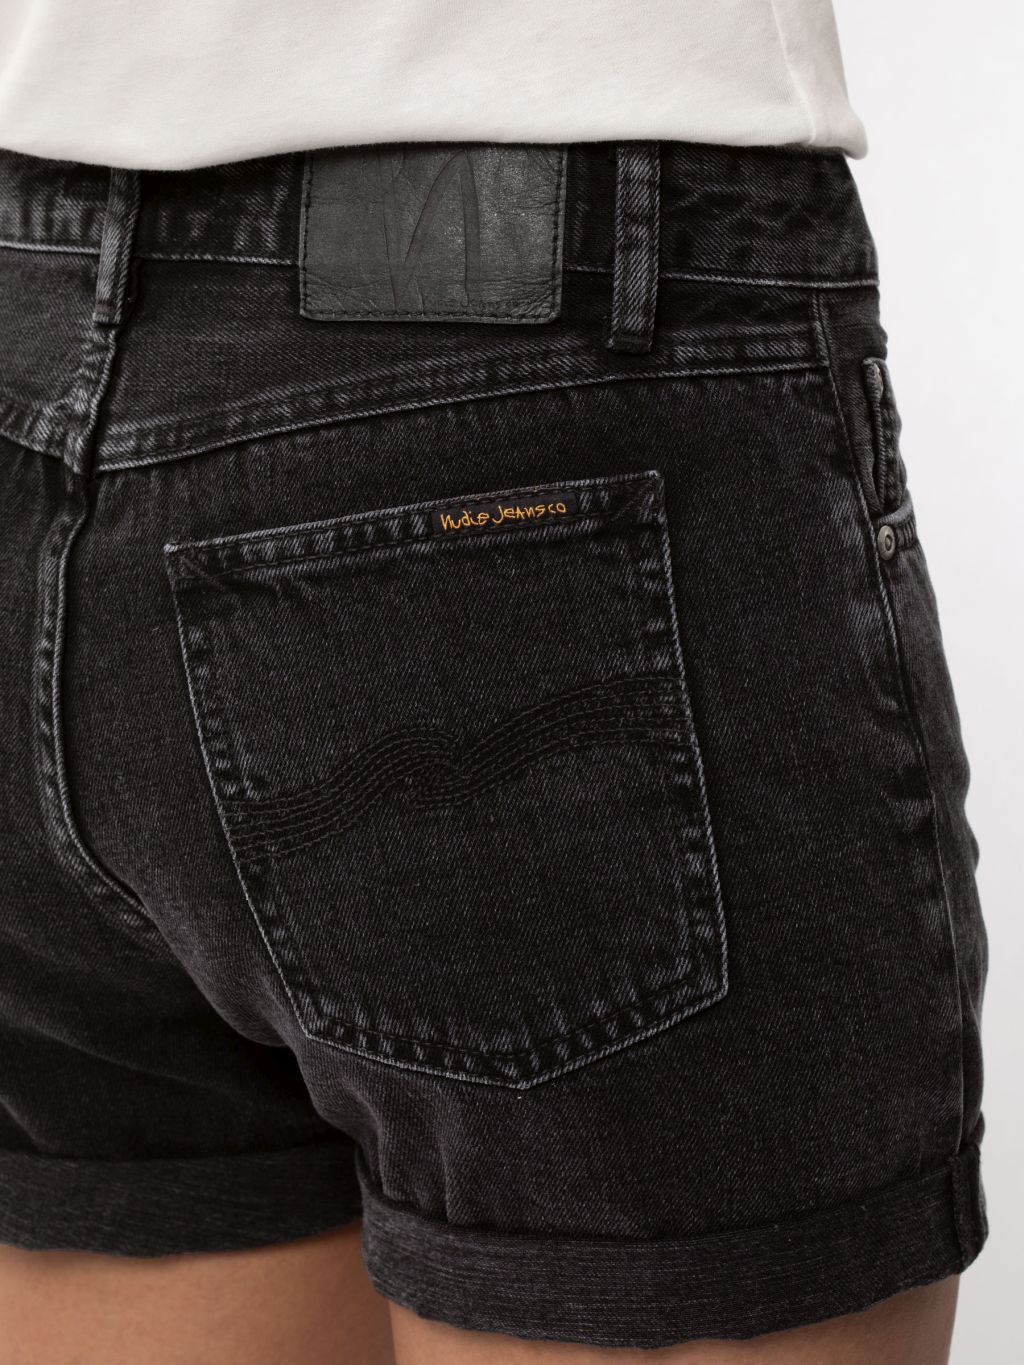 Jeans-Shorts Black Trace black 30